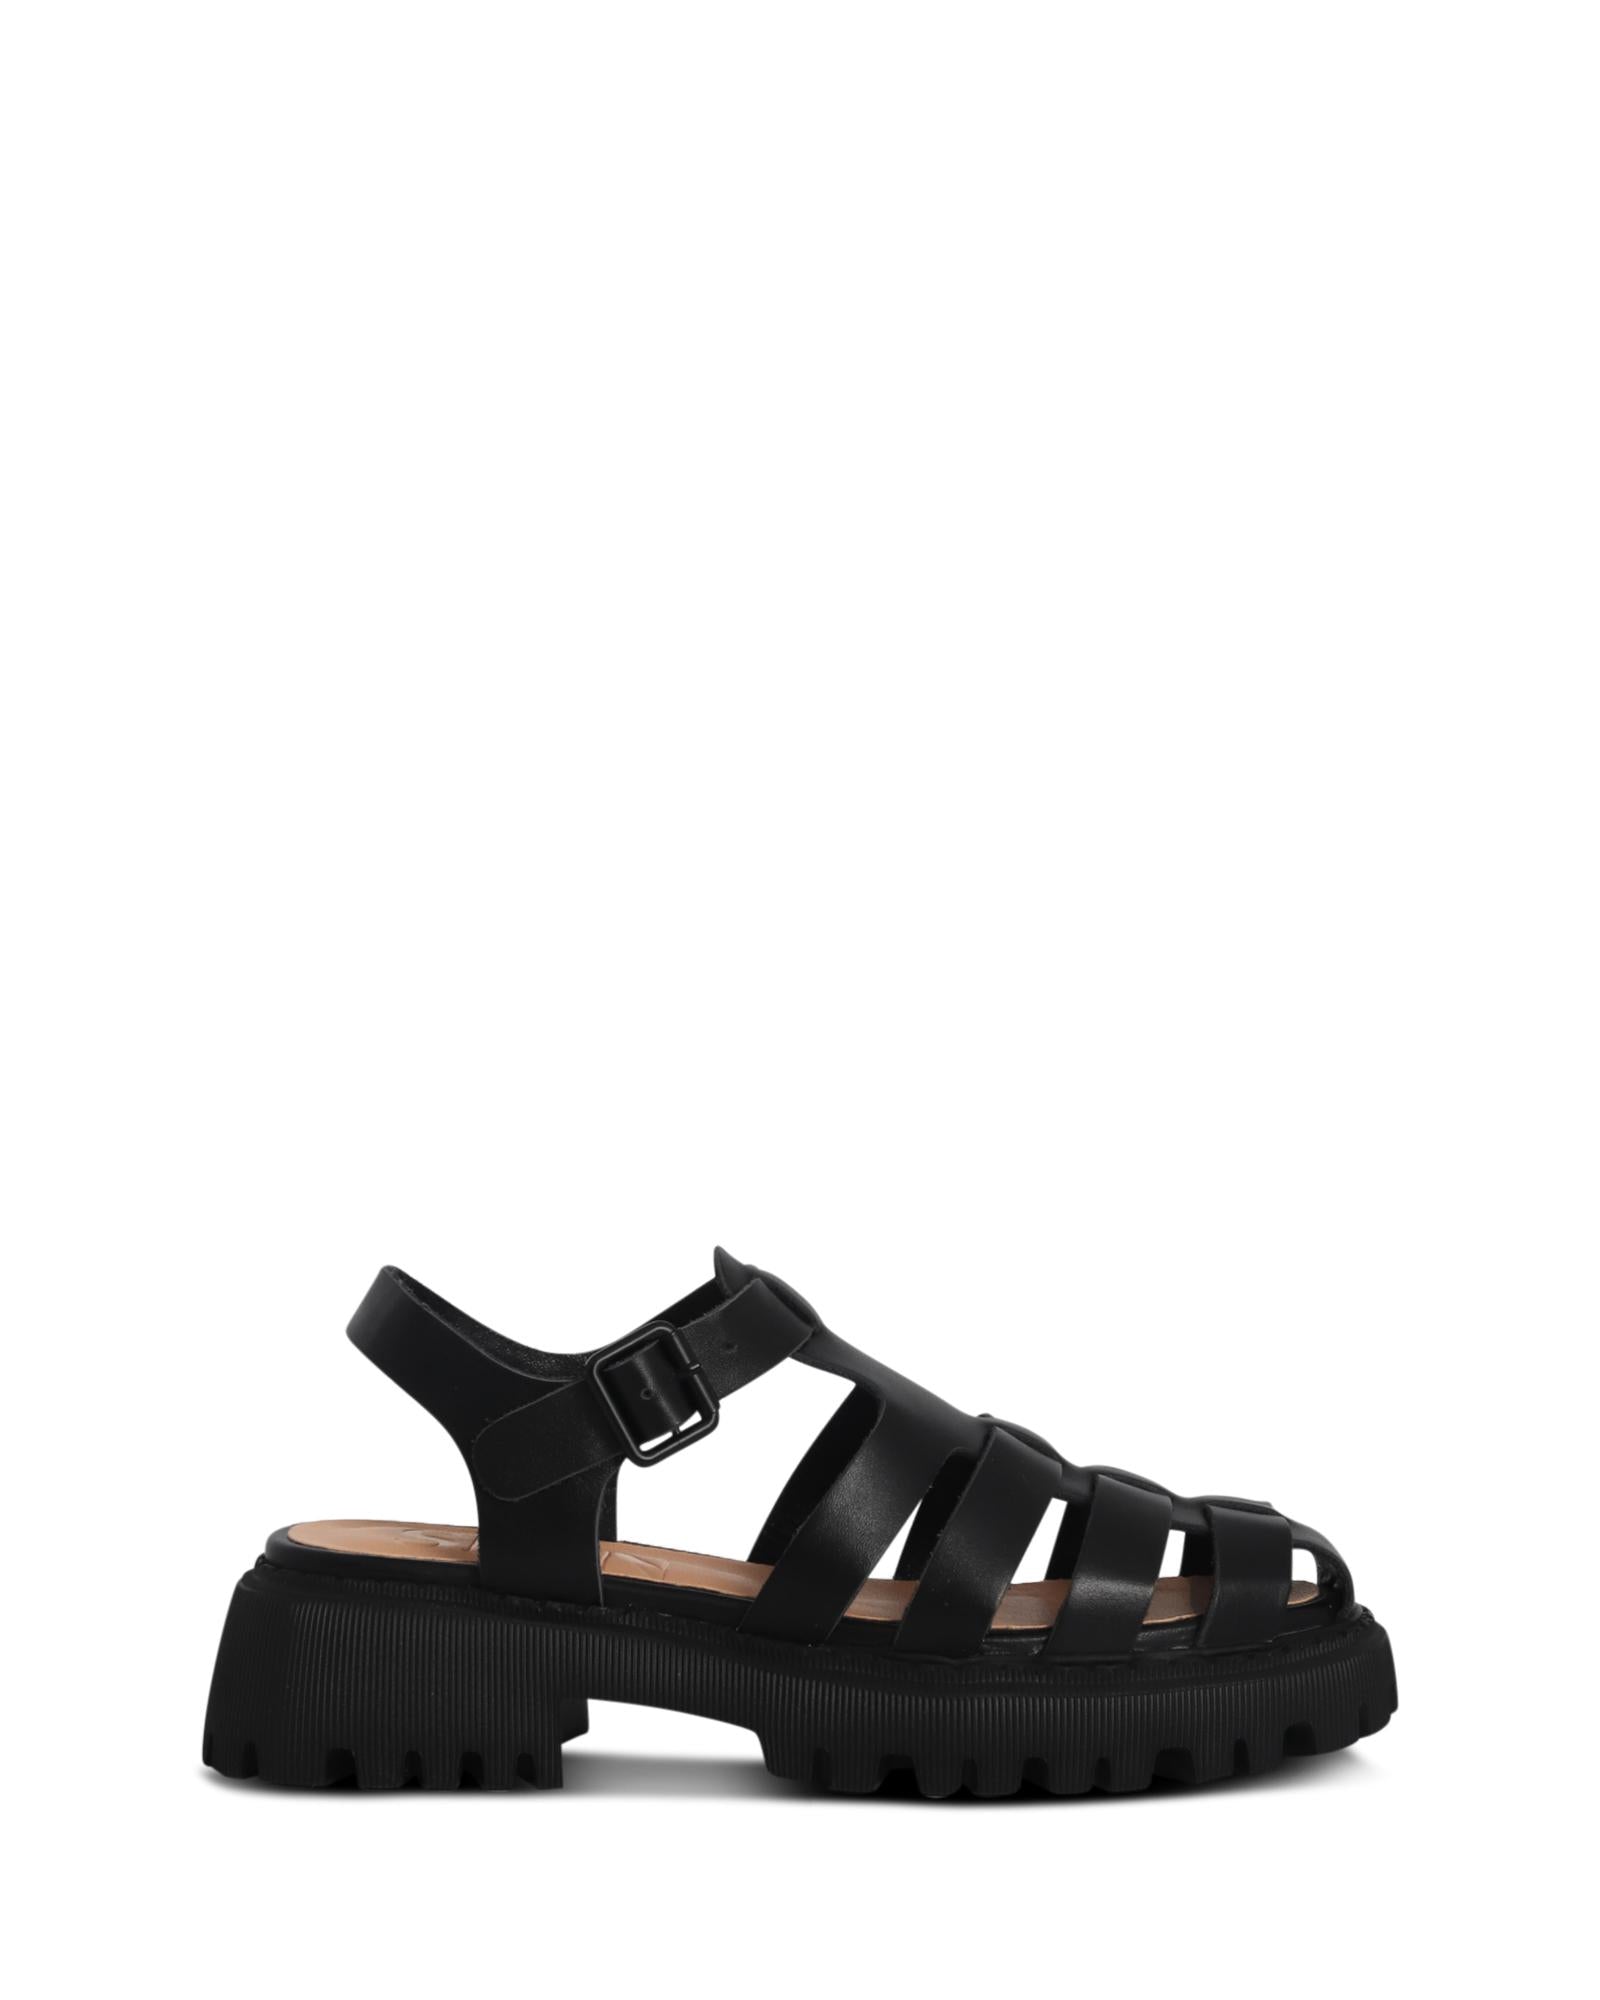 Seoul Black 5cm Sandal with Adjustable Ankle Strap 